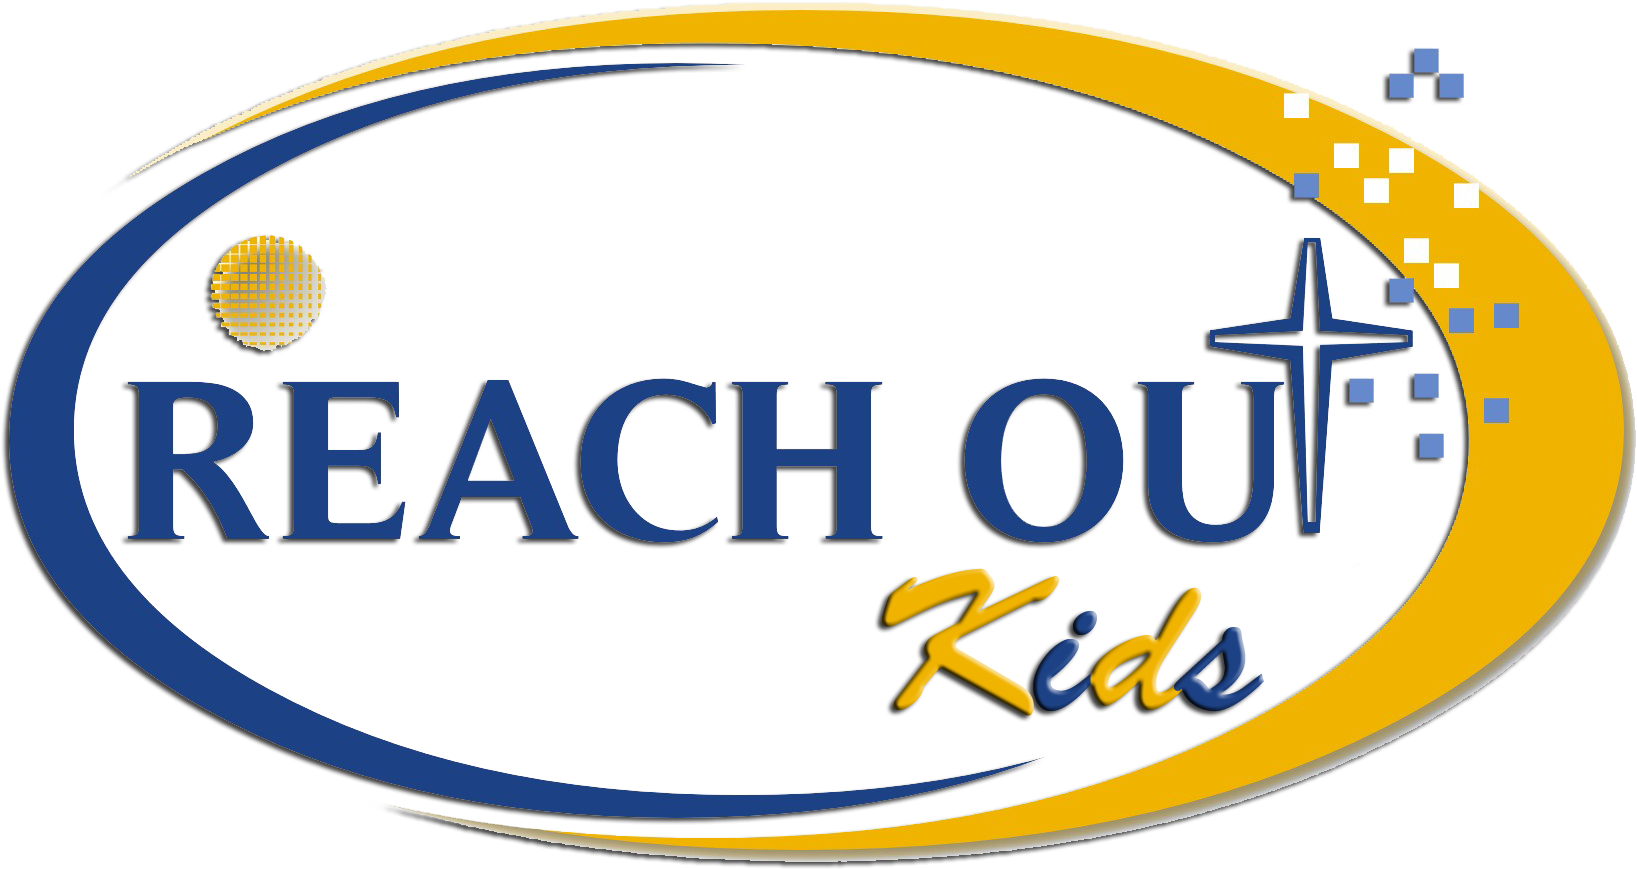 Reachout Logo Kids1 - Soporte Tecnico Clipart - Large Size Png Image ...